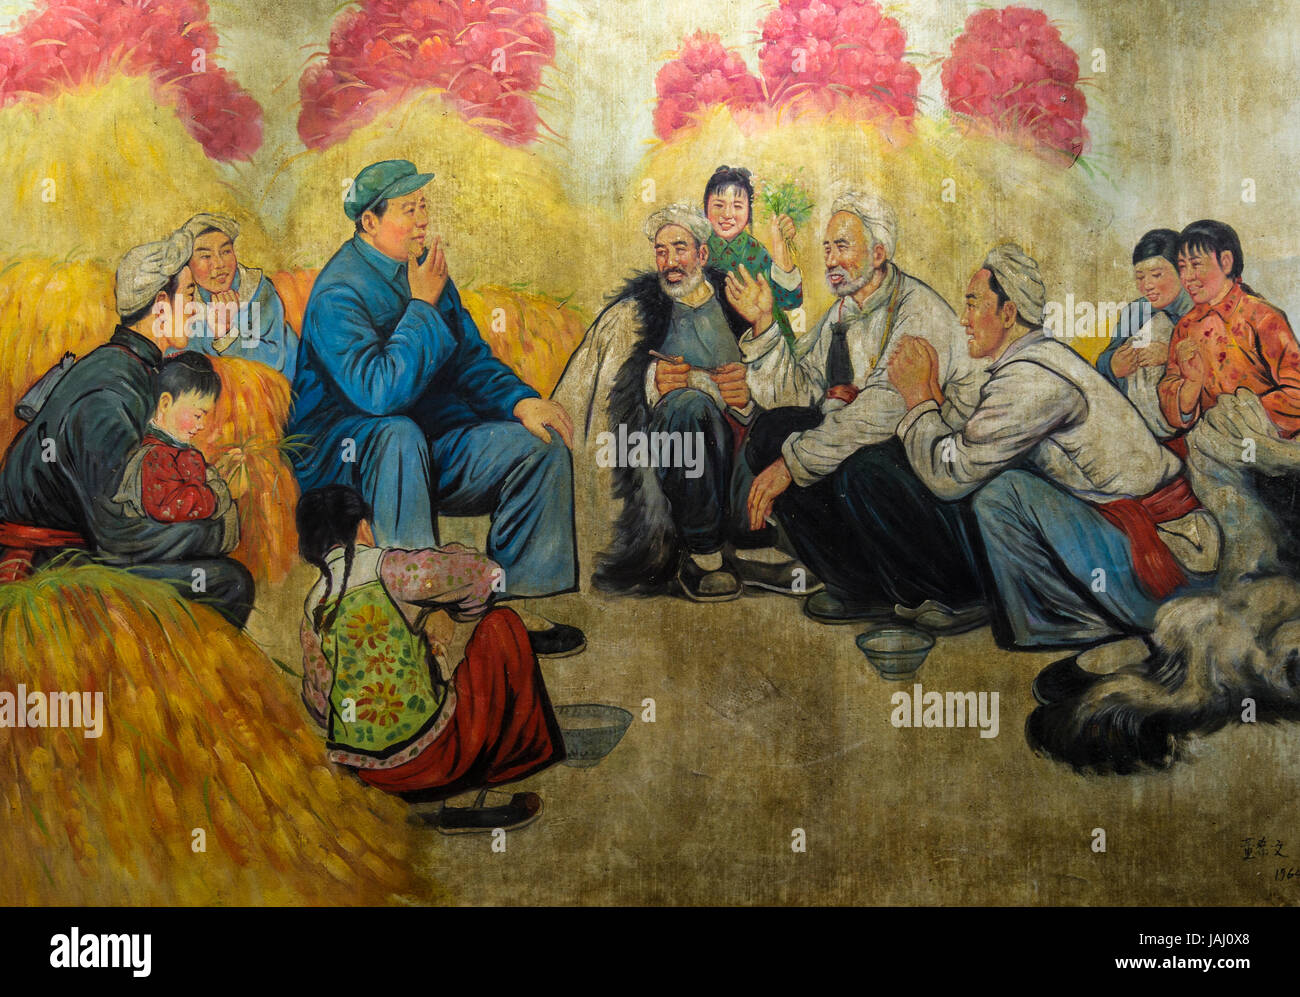 Ol Gemalde Im Stil Des Sozialistischen Realismus In Der Kunst Der Darstellung Des Vorsitzenden Mao Als Fuhrer Der Menschen Suzhou Provinz Jiangsu China Stockfotografie Alamy